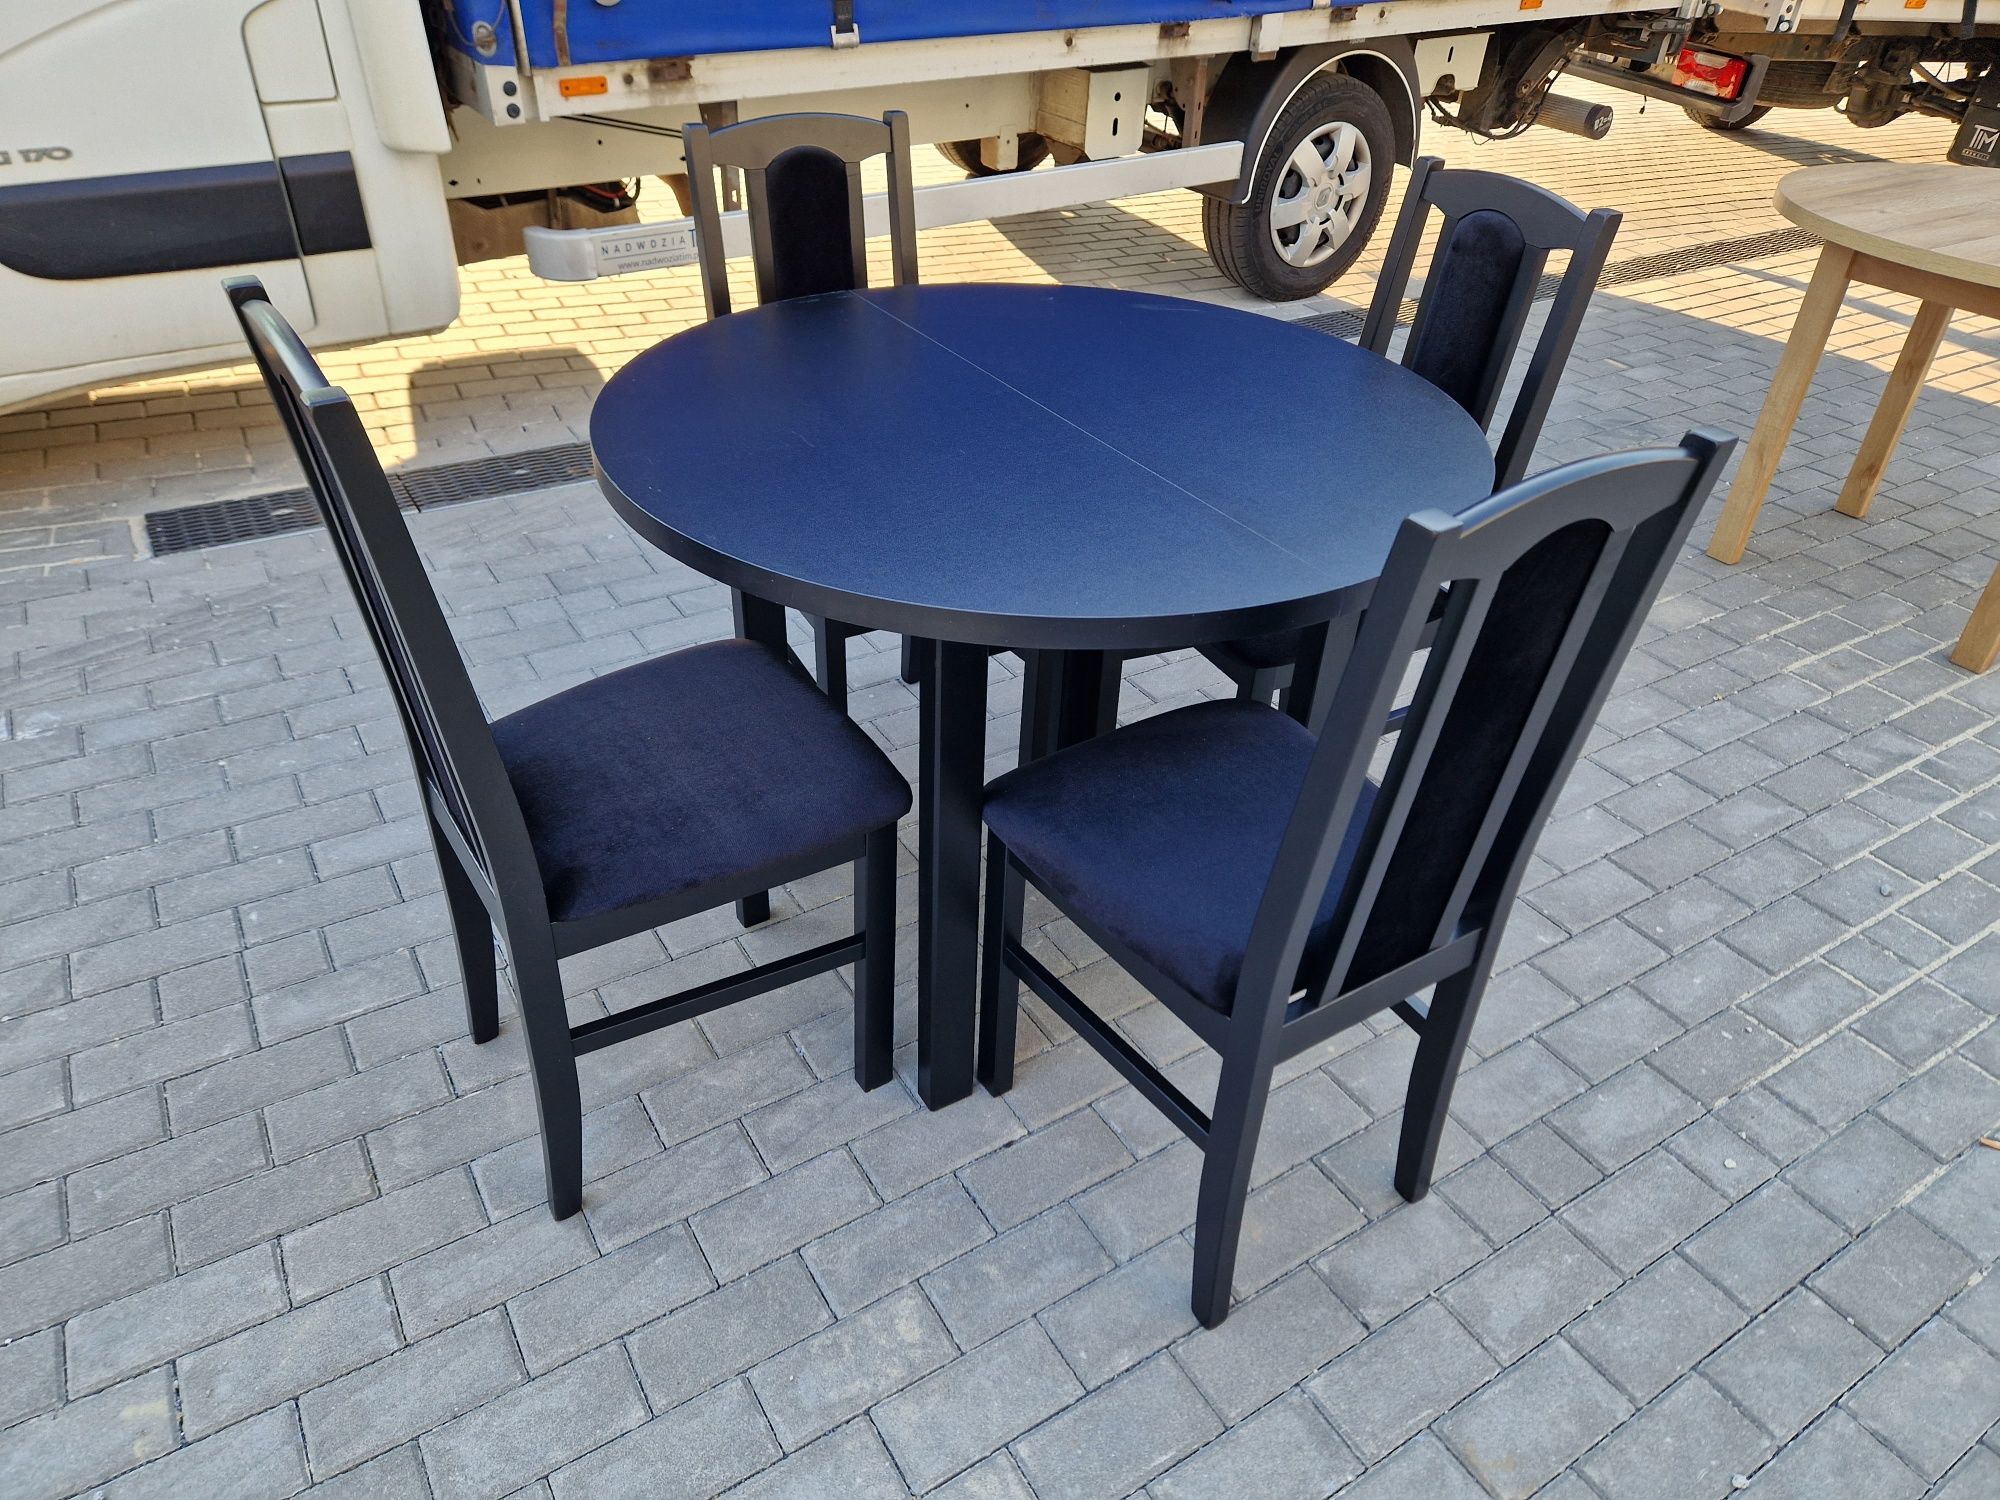 Nowe : Stół okrągły + 4 krzesła,  czarny + czarny , dostawa PL